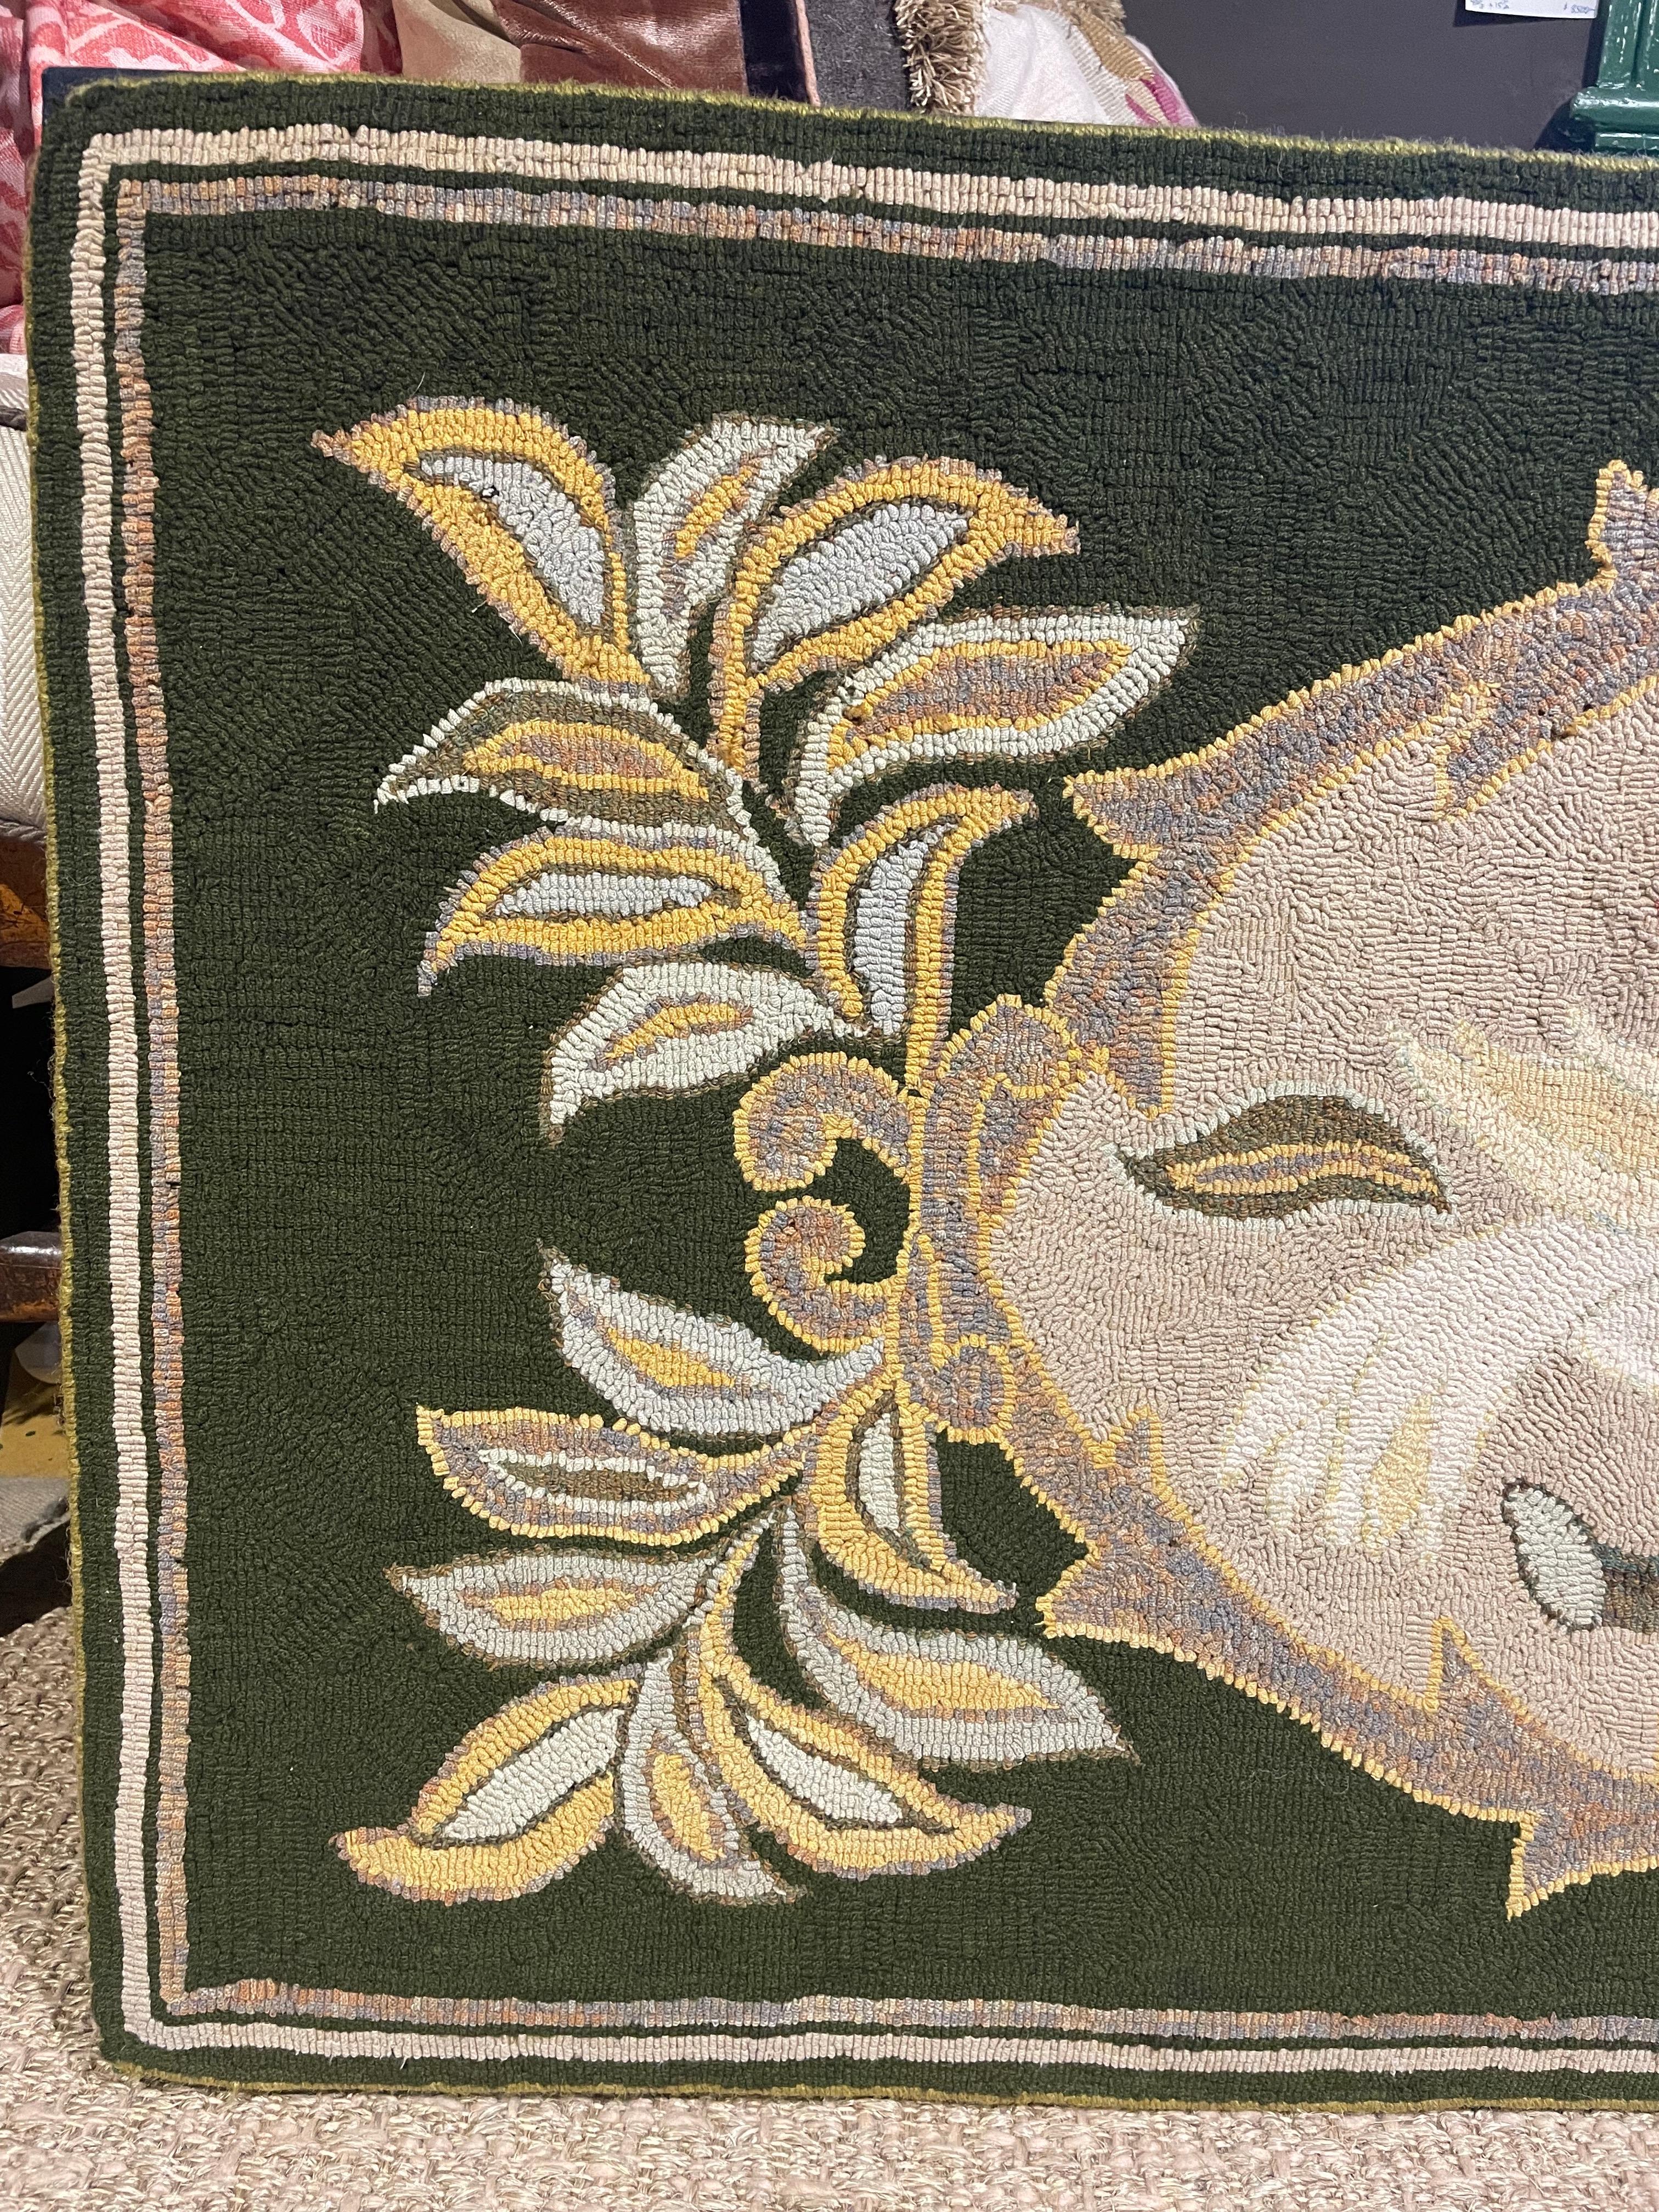 Hakenteppich aus der Jahrhundertwende/dem frühen 20. Jahrhundert, montiert für Wandaufhängung auf schwarzem Leinen und Schaumstoffträger.  Mit immergrünem Grund und weiß und bunt gestreiftem Rand.  Zentrales Medaillon, flankiert von pflanzlichen